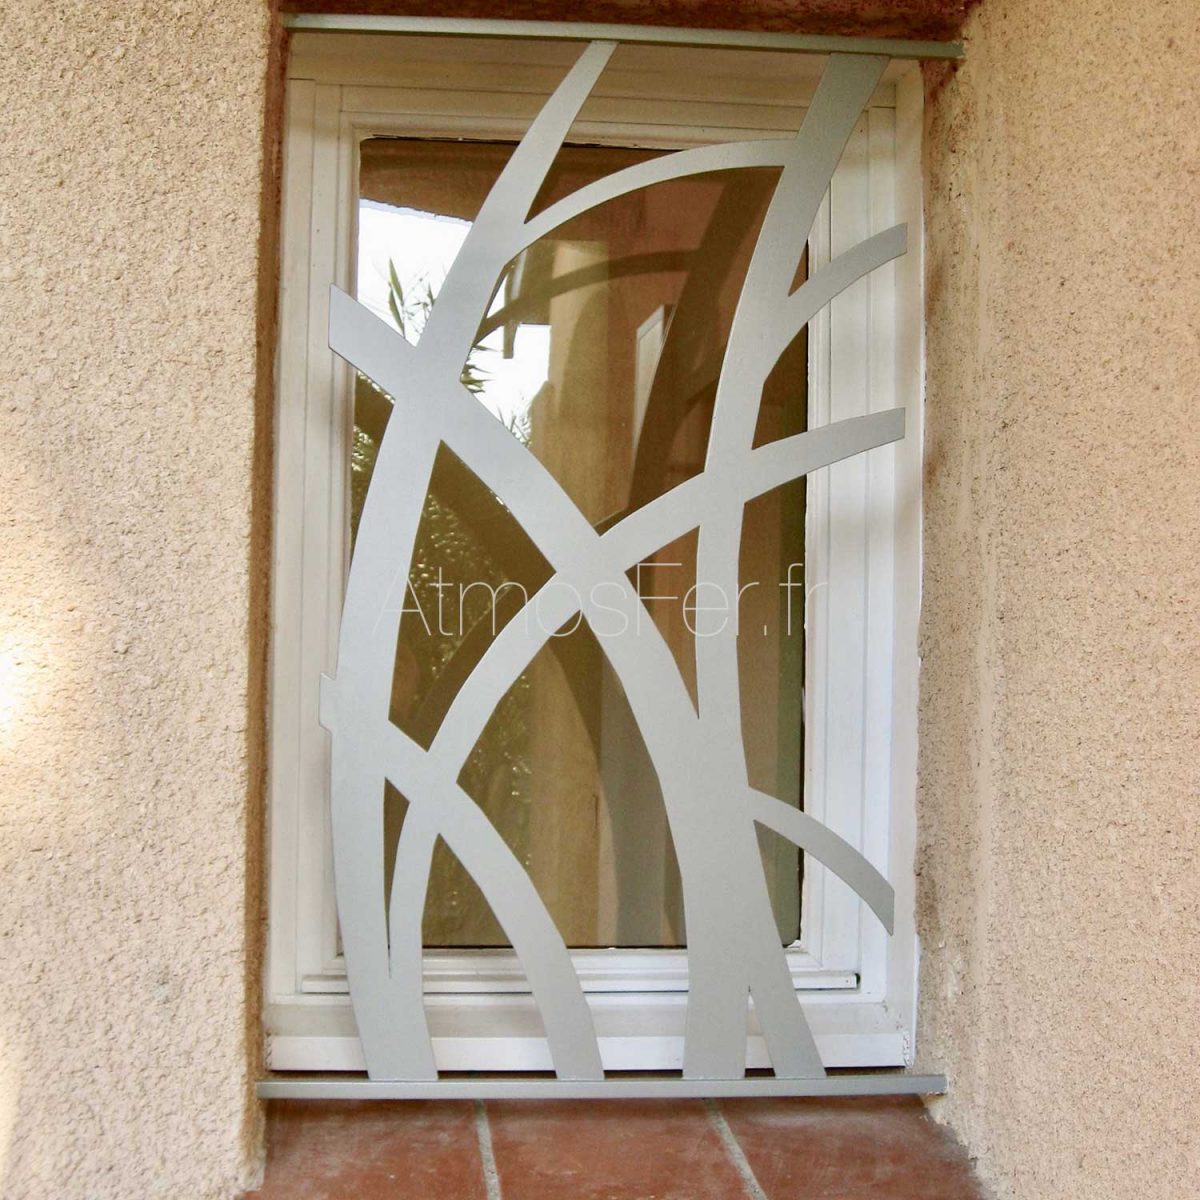 Grille de protection motif végétal - Atmosfer Grille de protection fenêtre